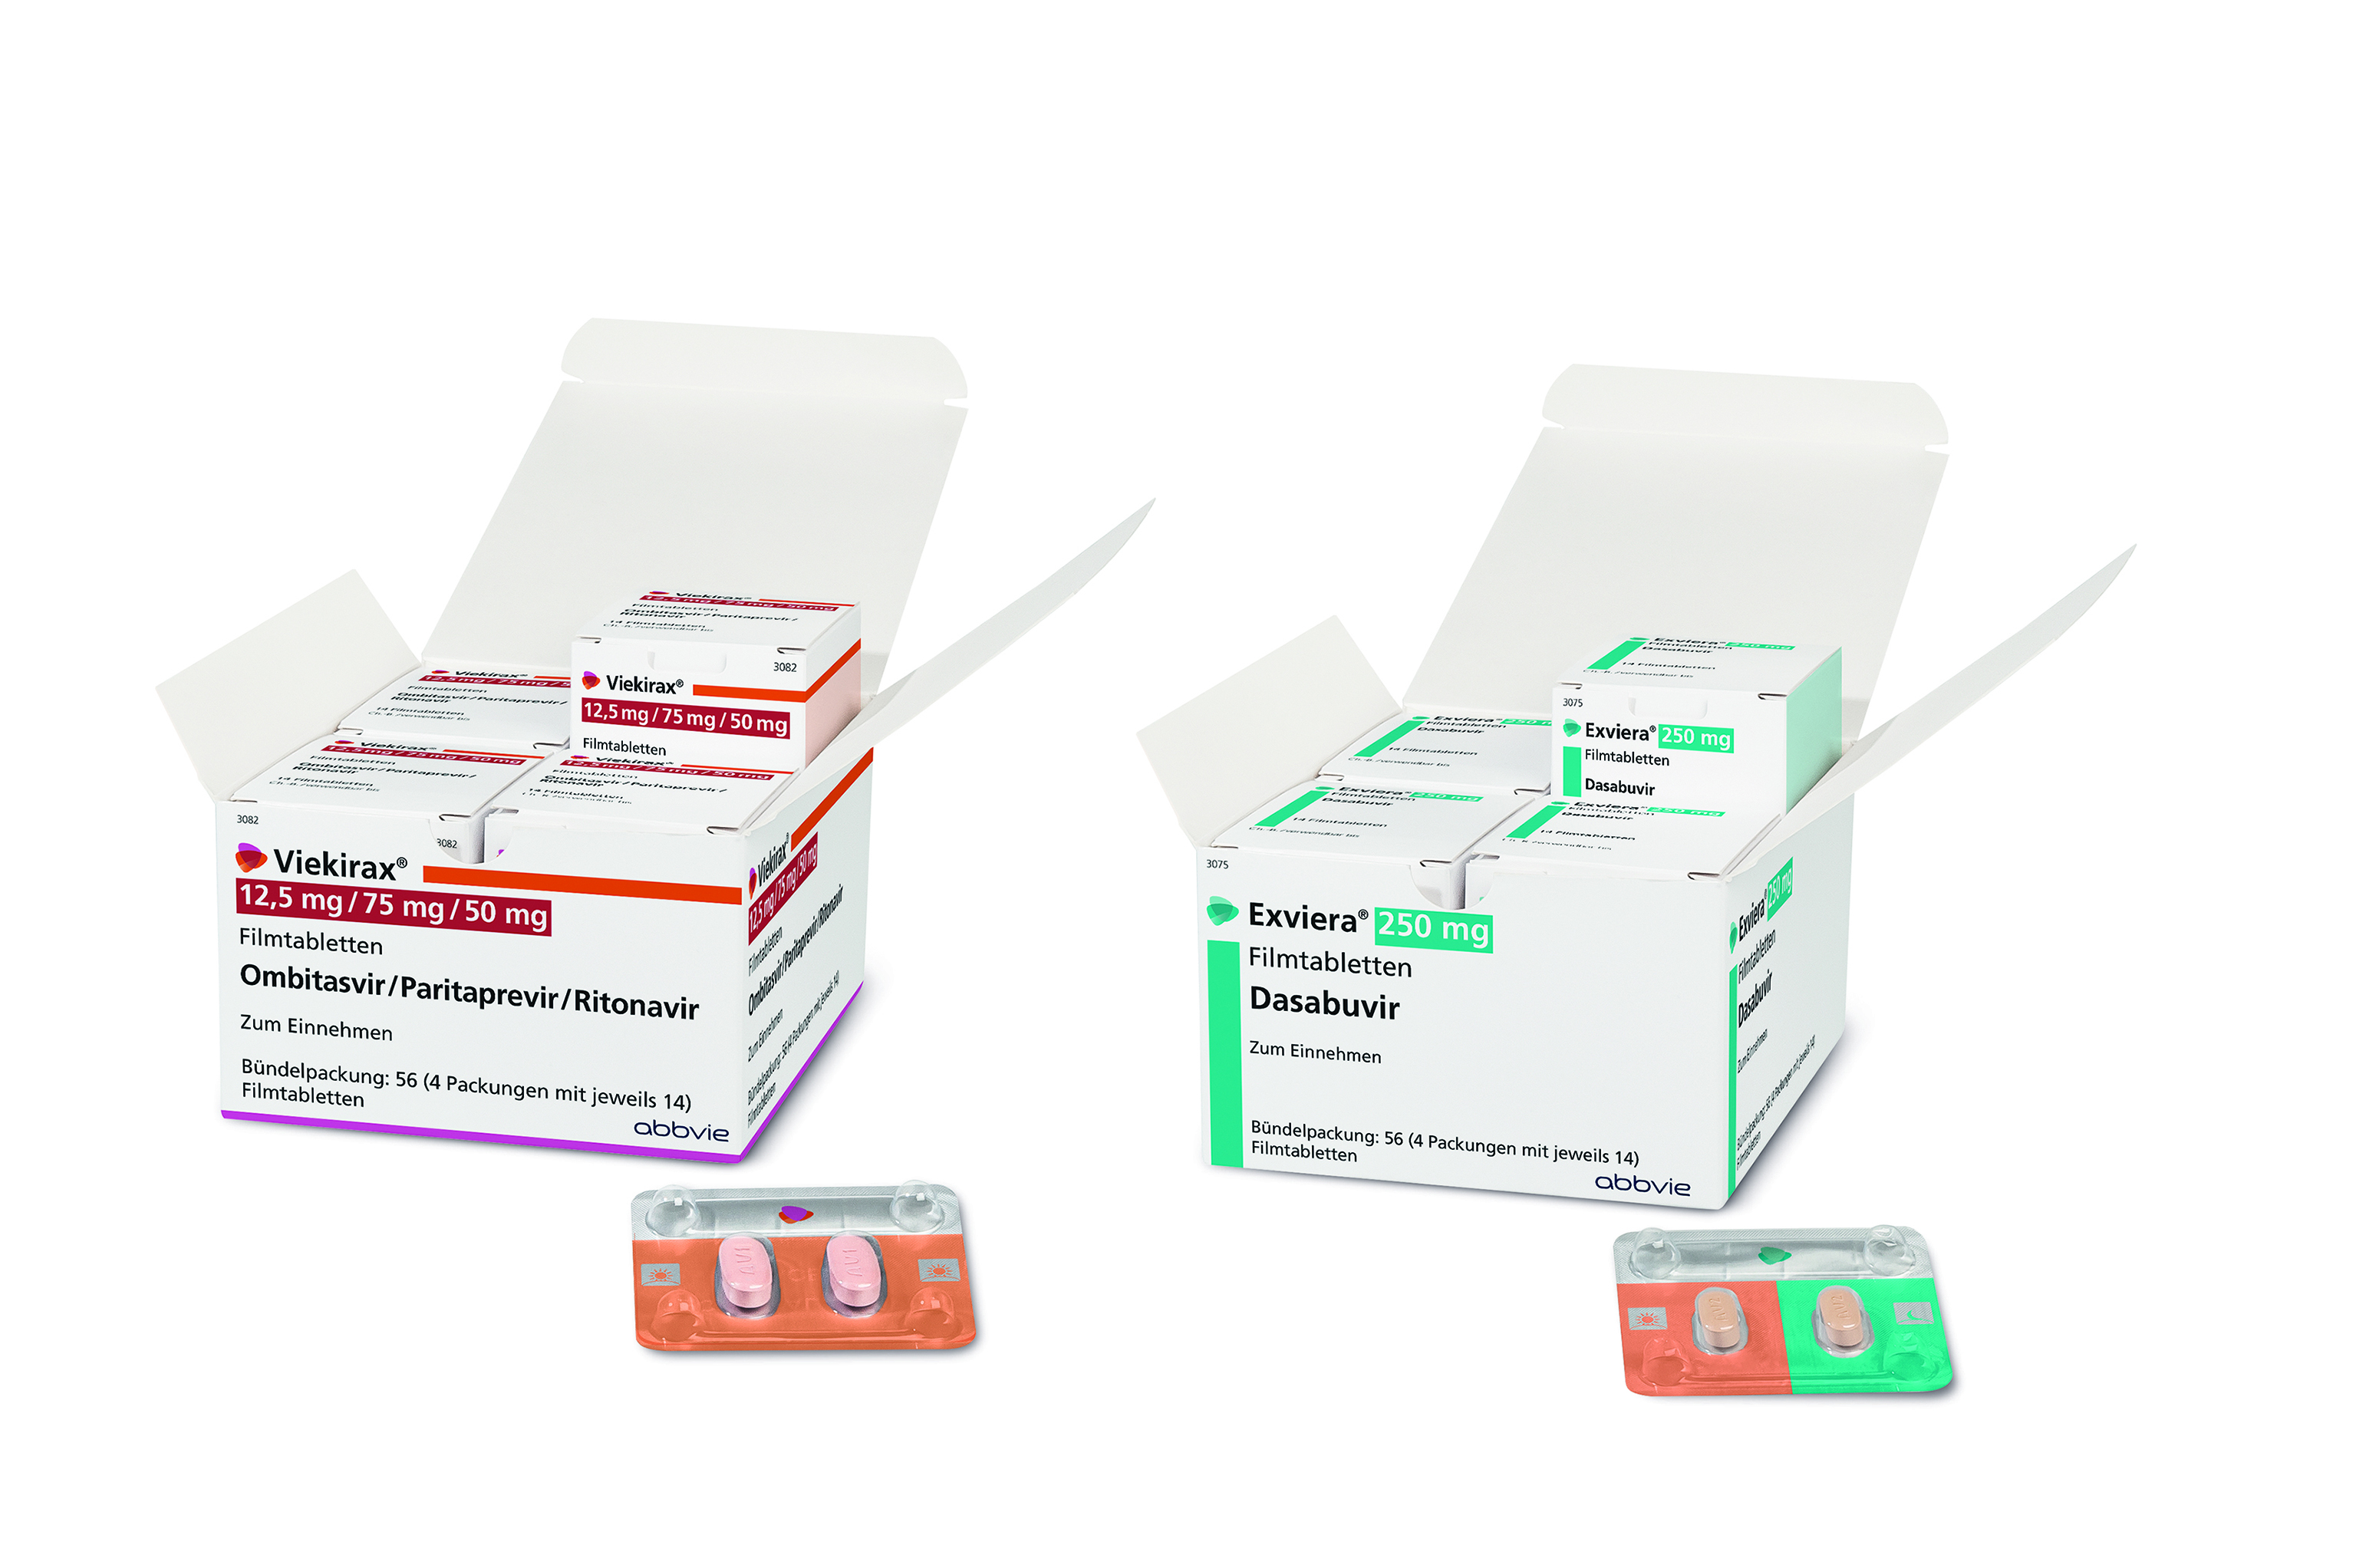   VIEKIRAX® + EXVIERA® zur Therapie der chronischen Hepatitis C ab sofort in Deutschland verfügbar 